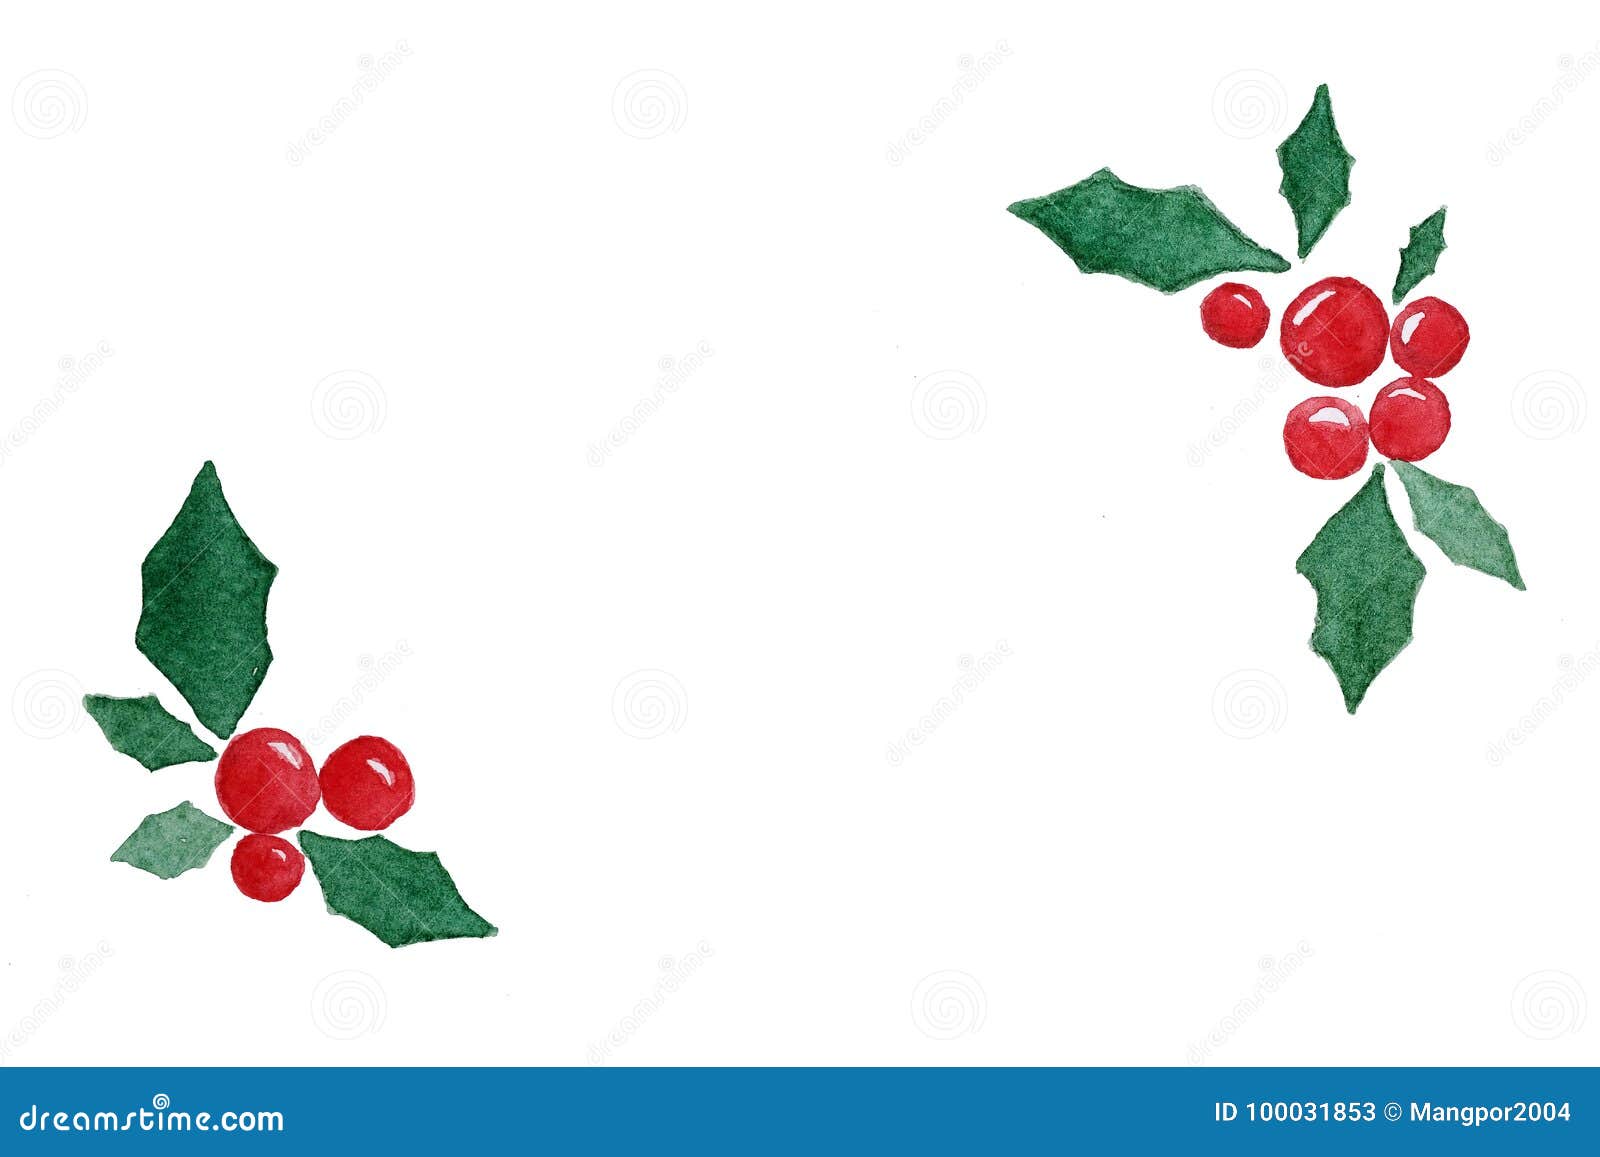 Dibujo De La Acuarela De La Guirnalda De La Navidad En Fondo Del Libro  Blanco Stock de ilustración - Ilustración de rojo, verde: 100031853